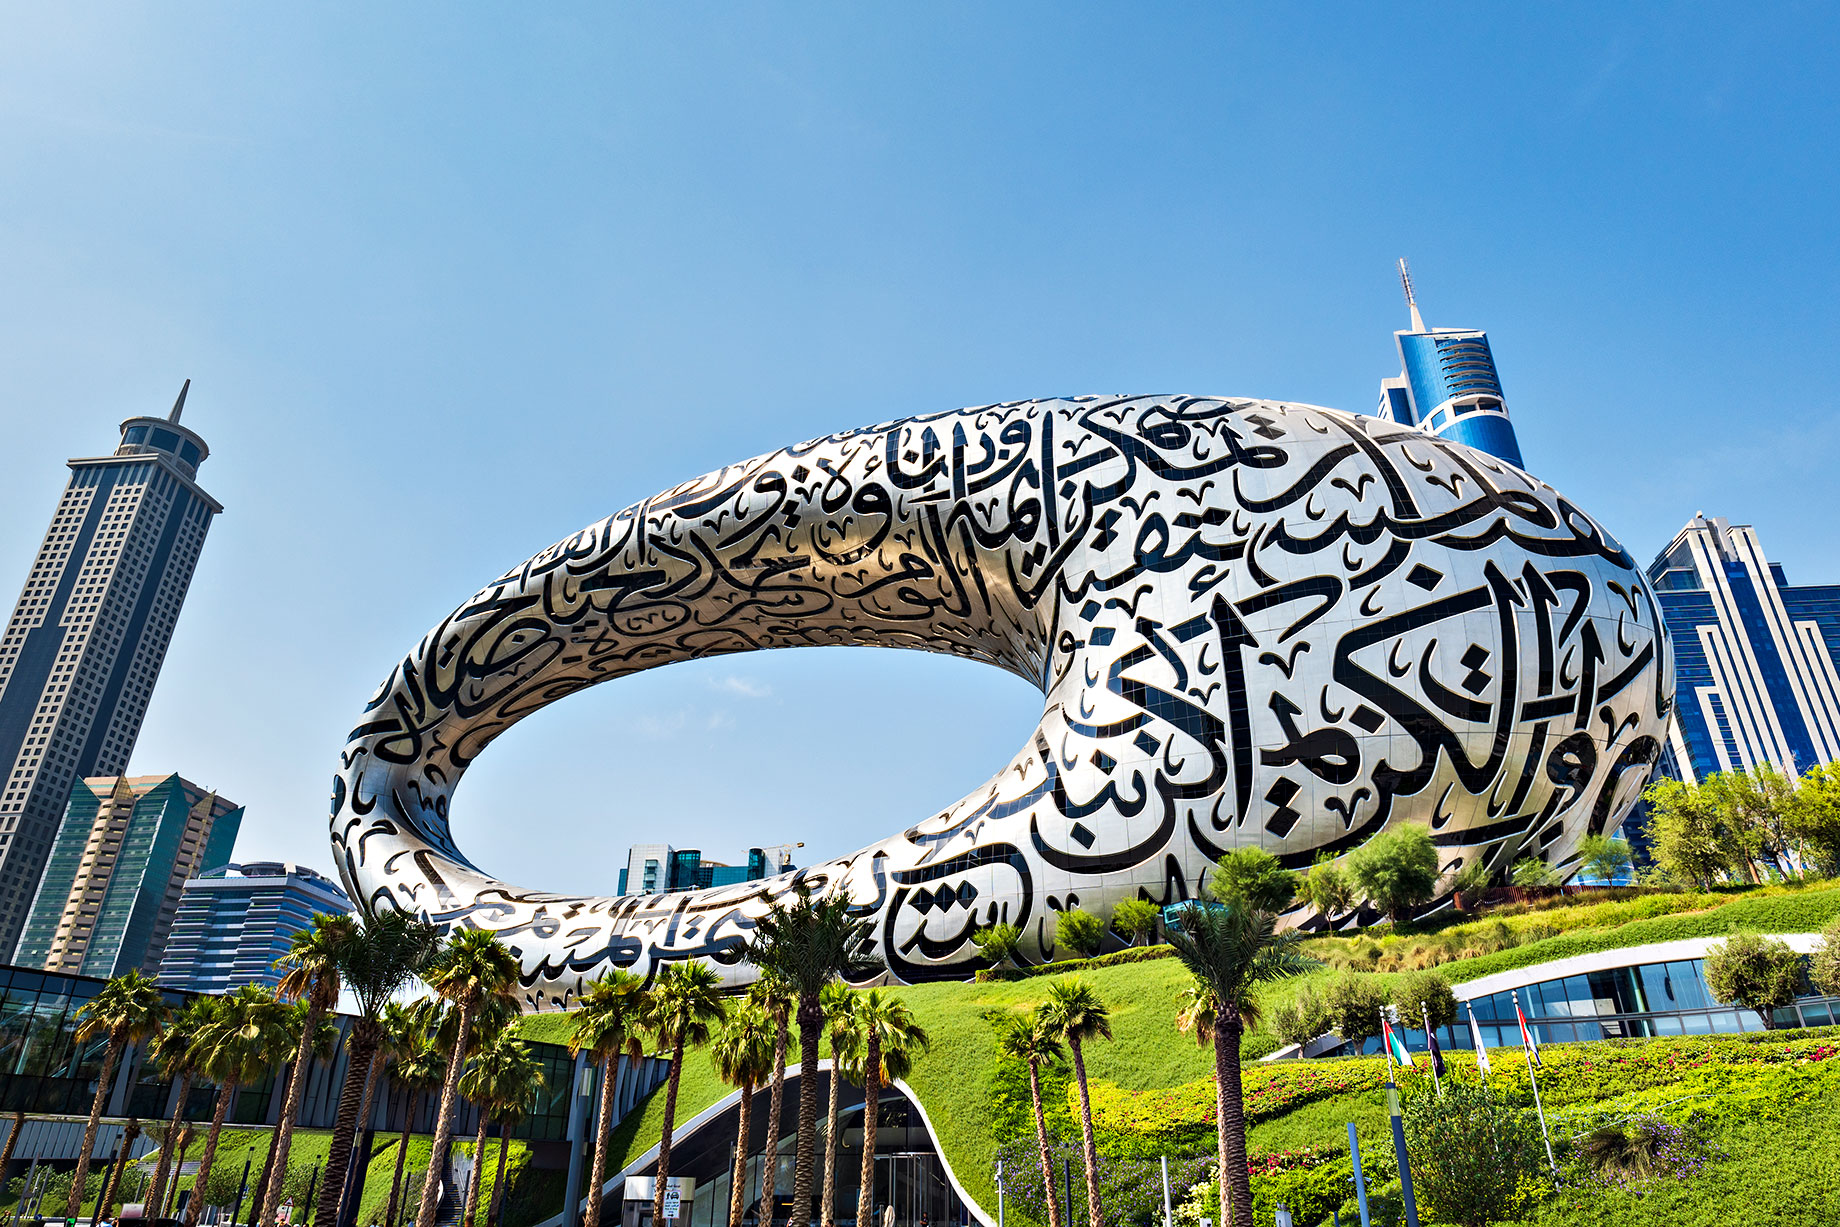 Museum of the Future - Dubai, United Arab Emirates